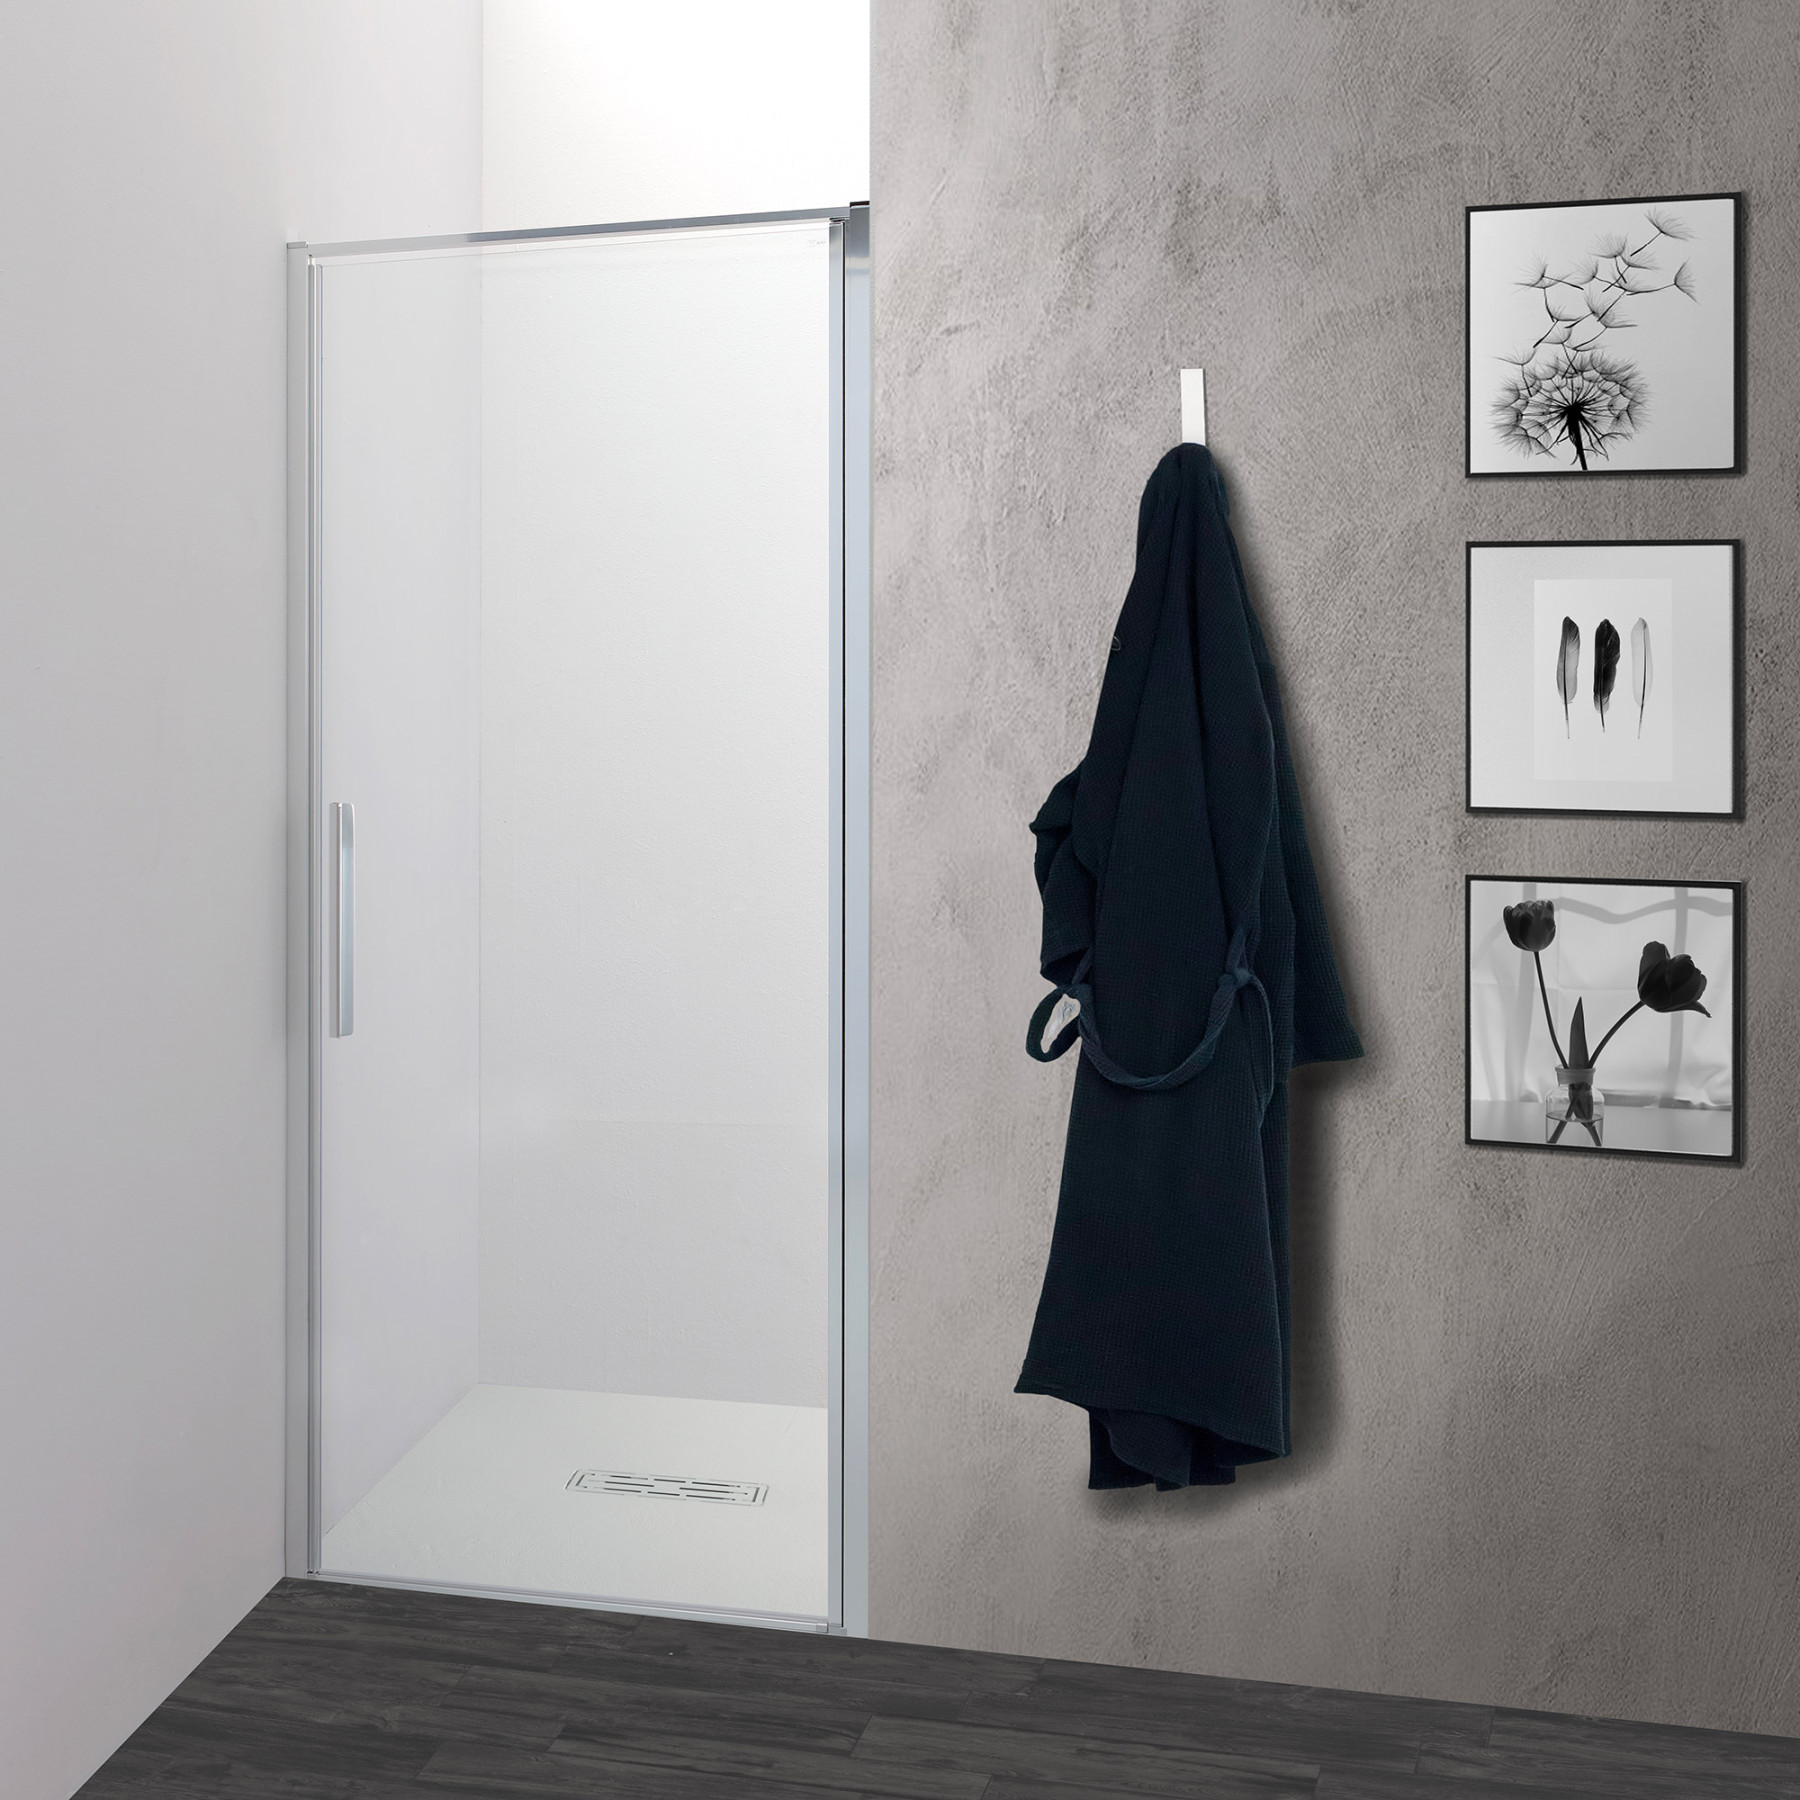 Porte doccia per nicchia: Porta box doccia battente da 85 a 140 cm